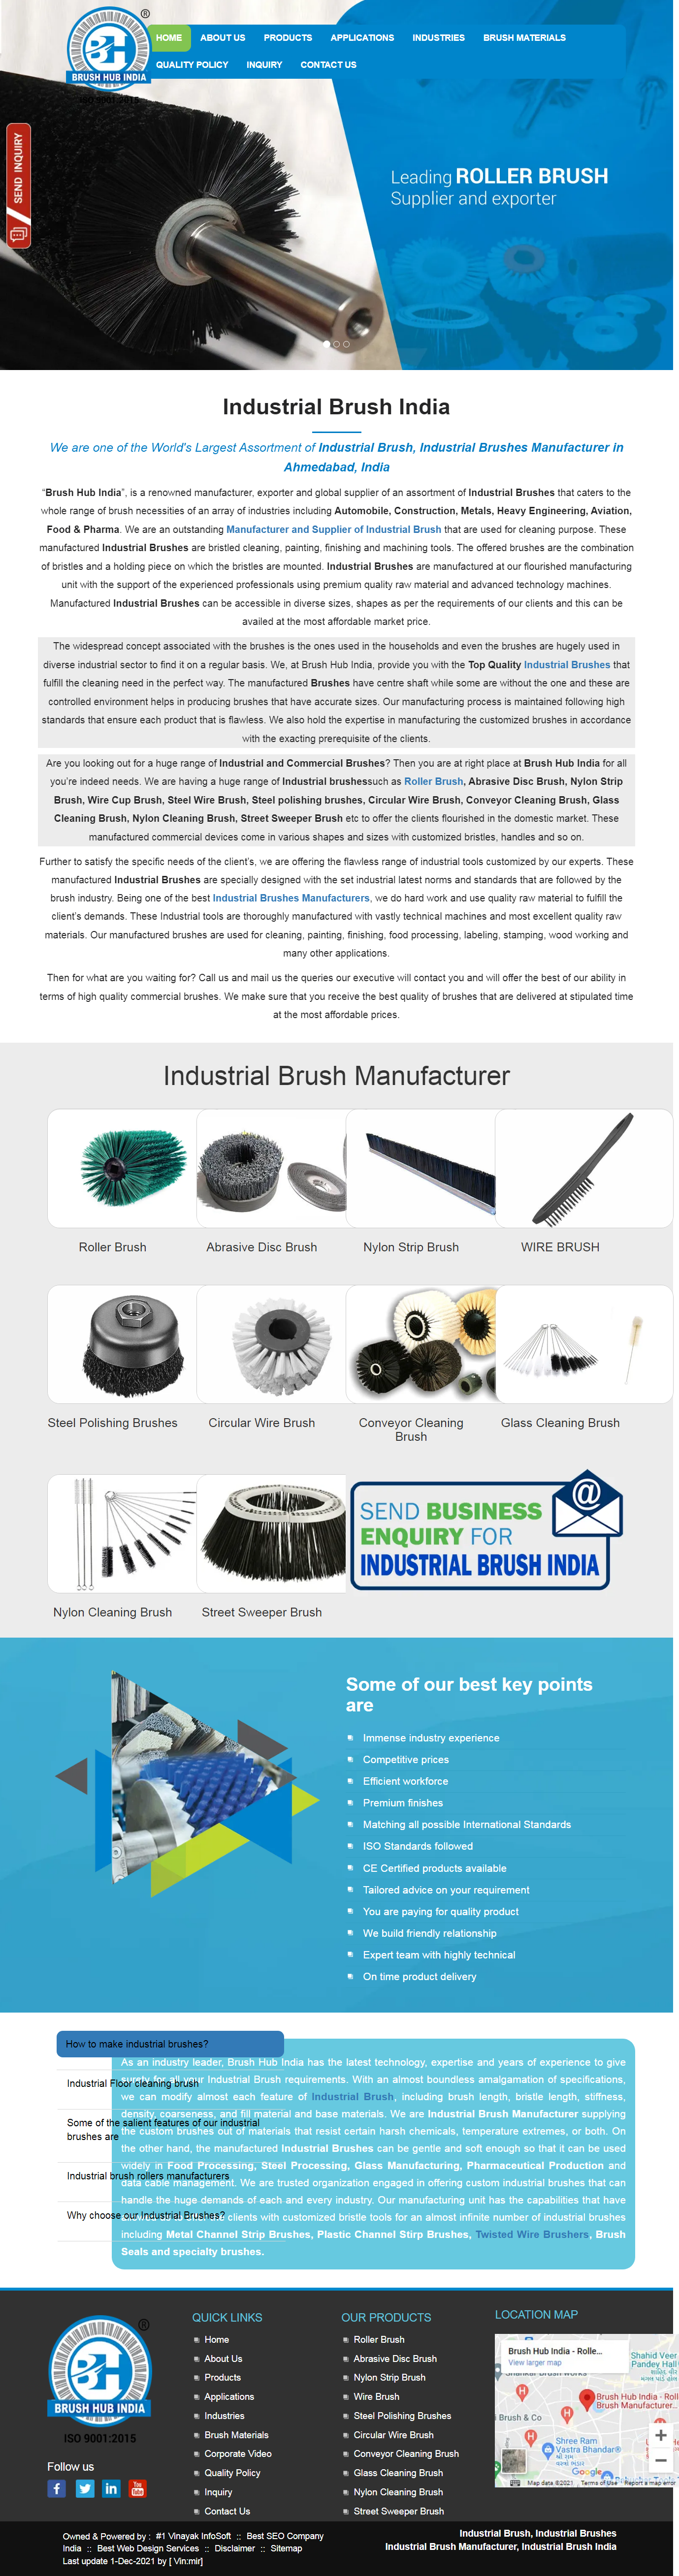 industrial brush india